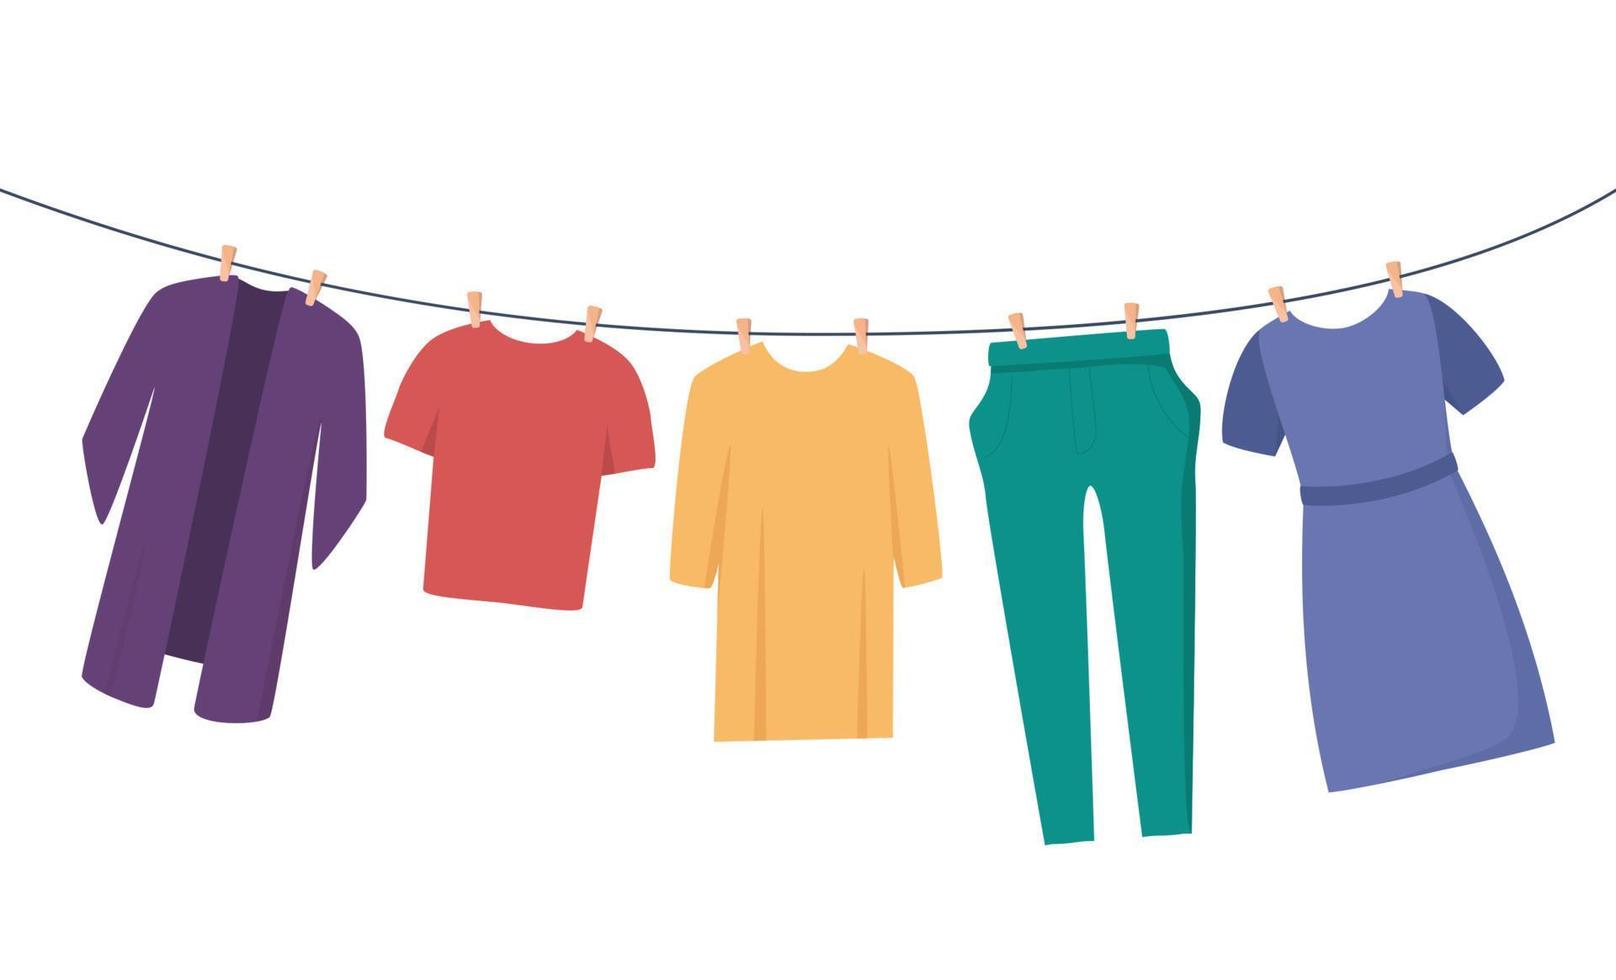 roupas no varal. roupas e acessórios após a lavagem em uma corda. t-shirt, vestido, calças, blusa. ilustração vetorial plana para tarefas domésticas, conceito de limpeza. vetor